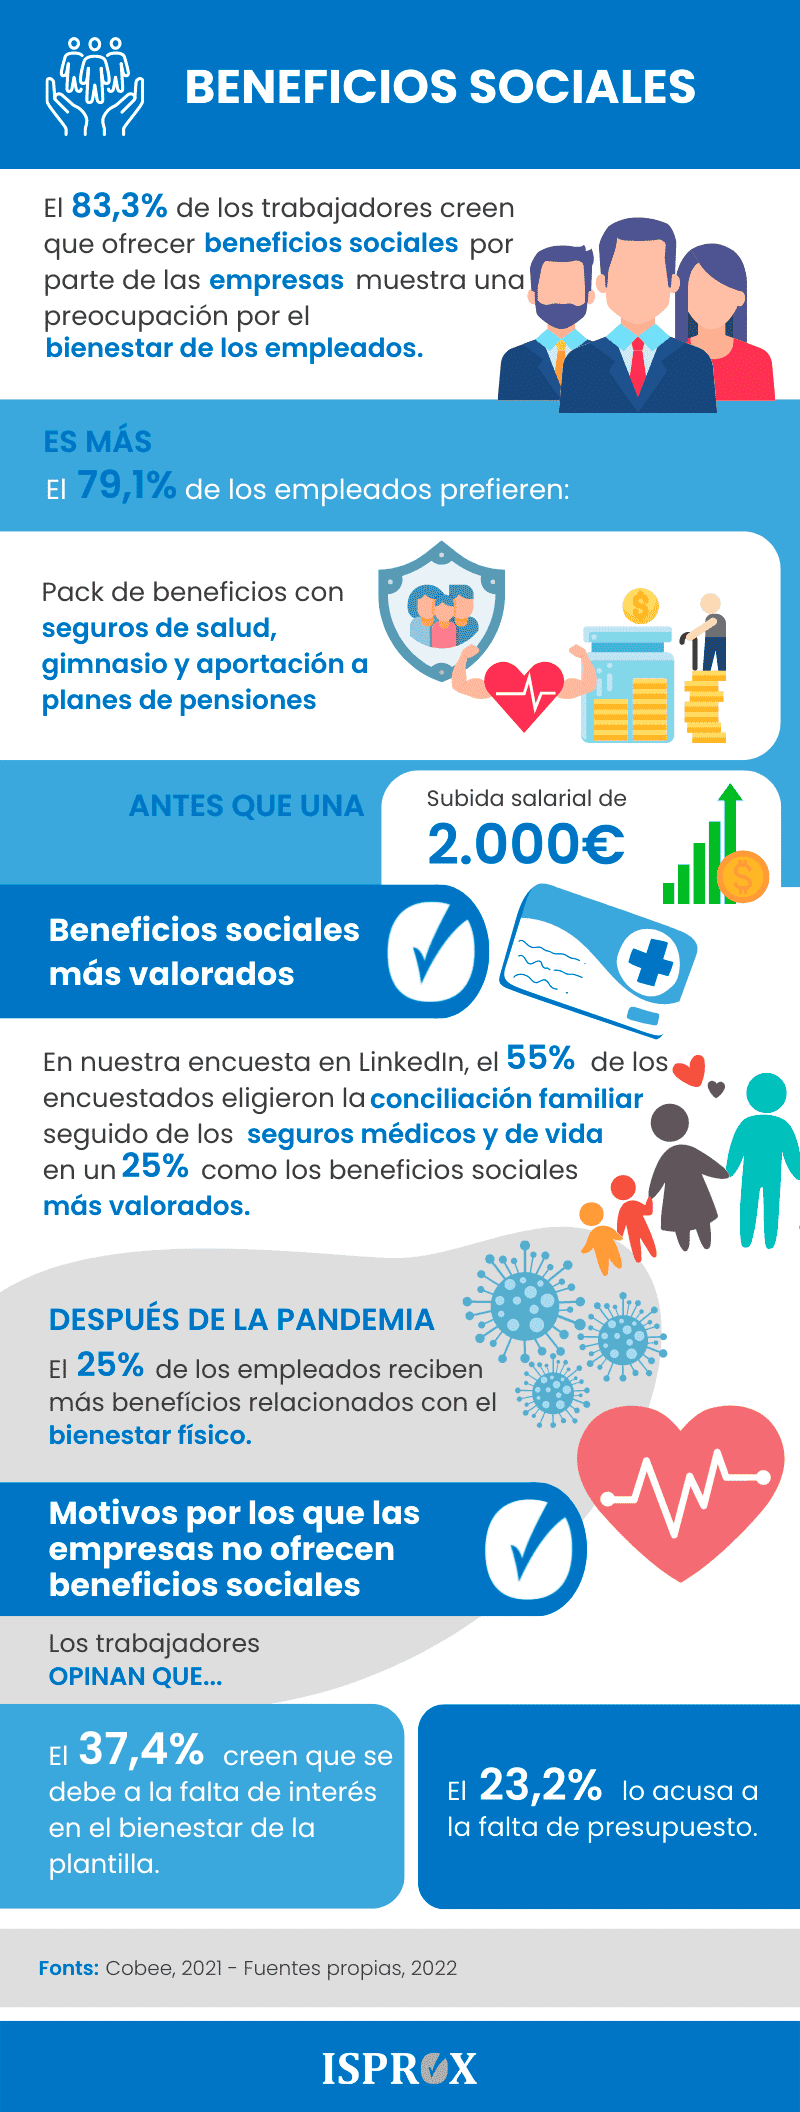 Infografia-BENEFICIOS-SOCIALES